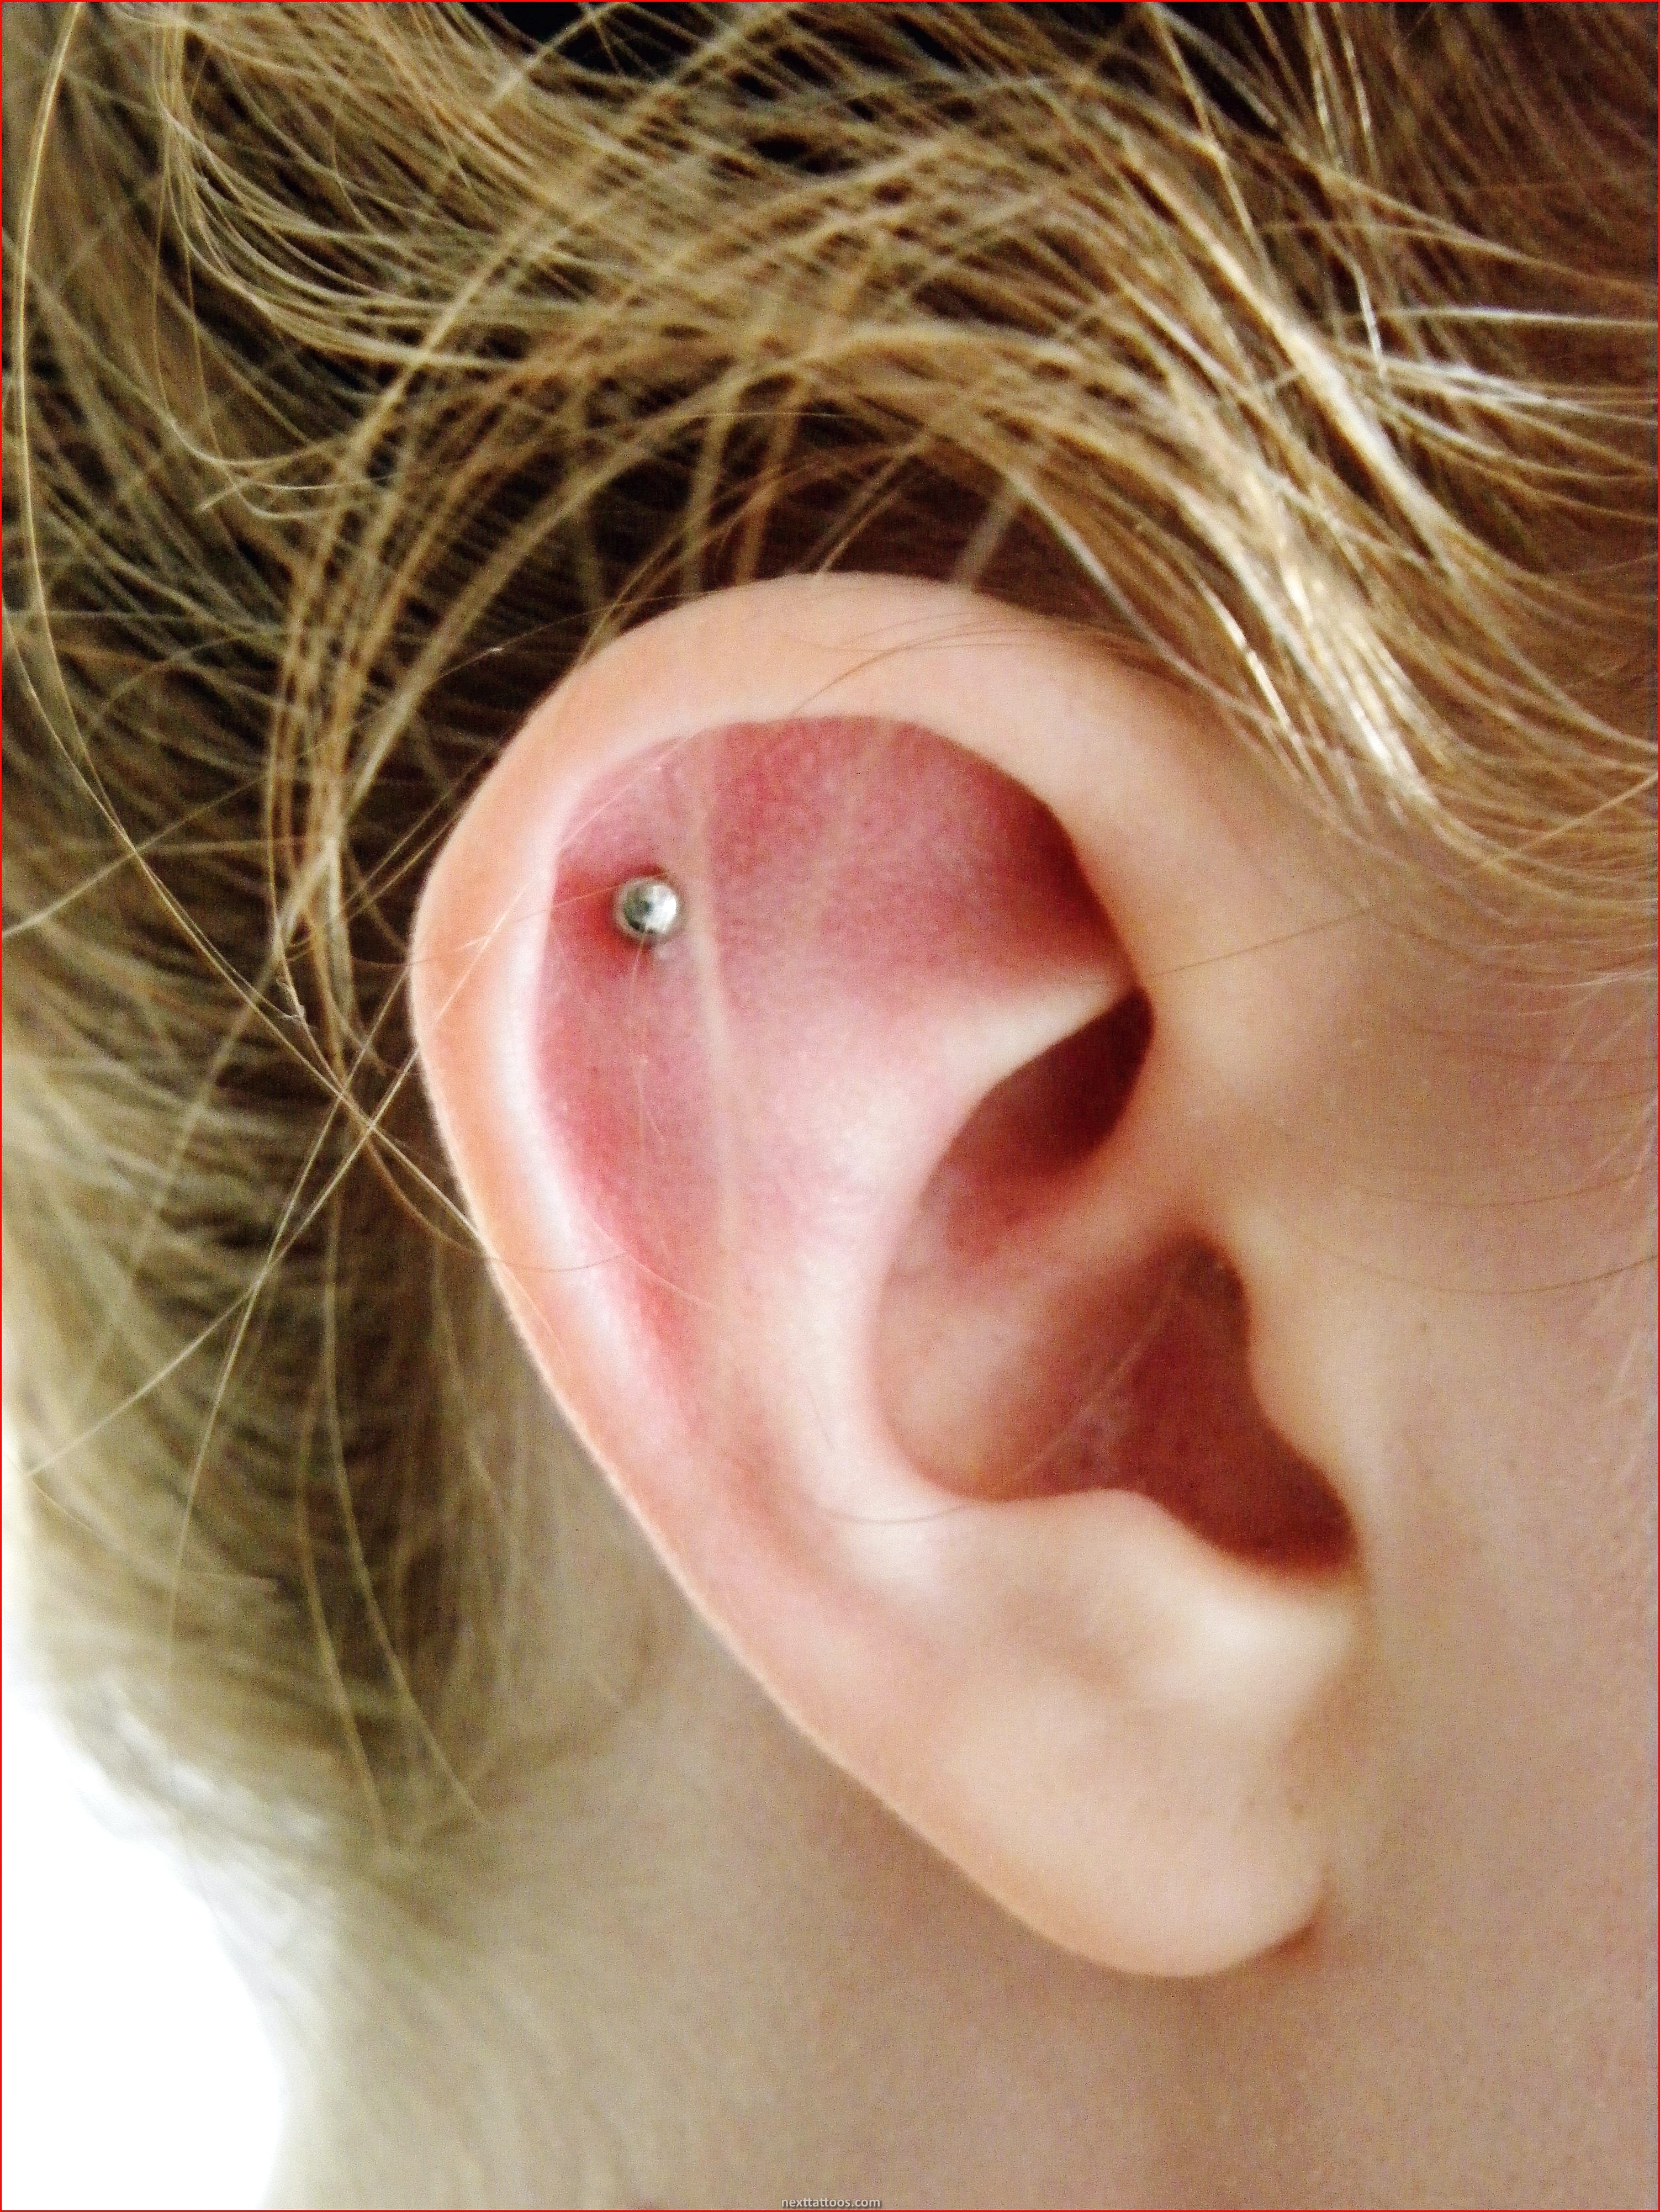 What Is a Flat Ear Piercing?